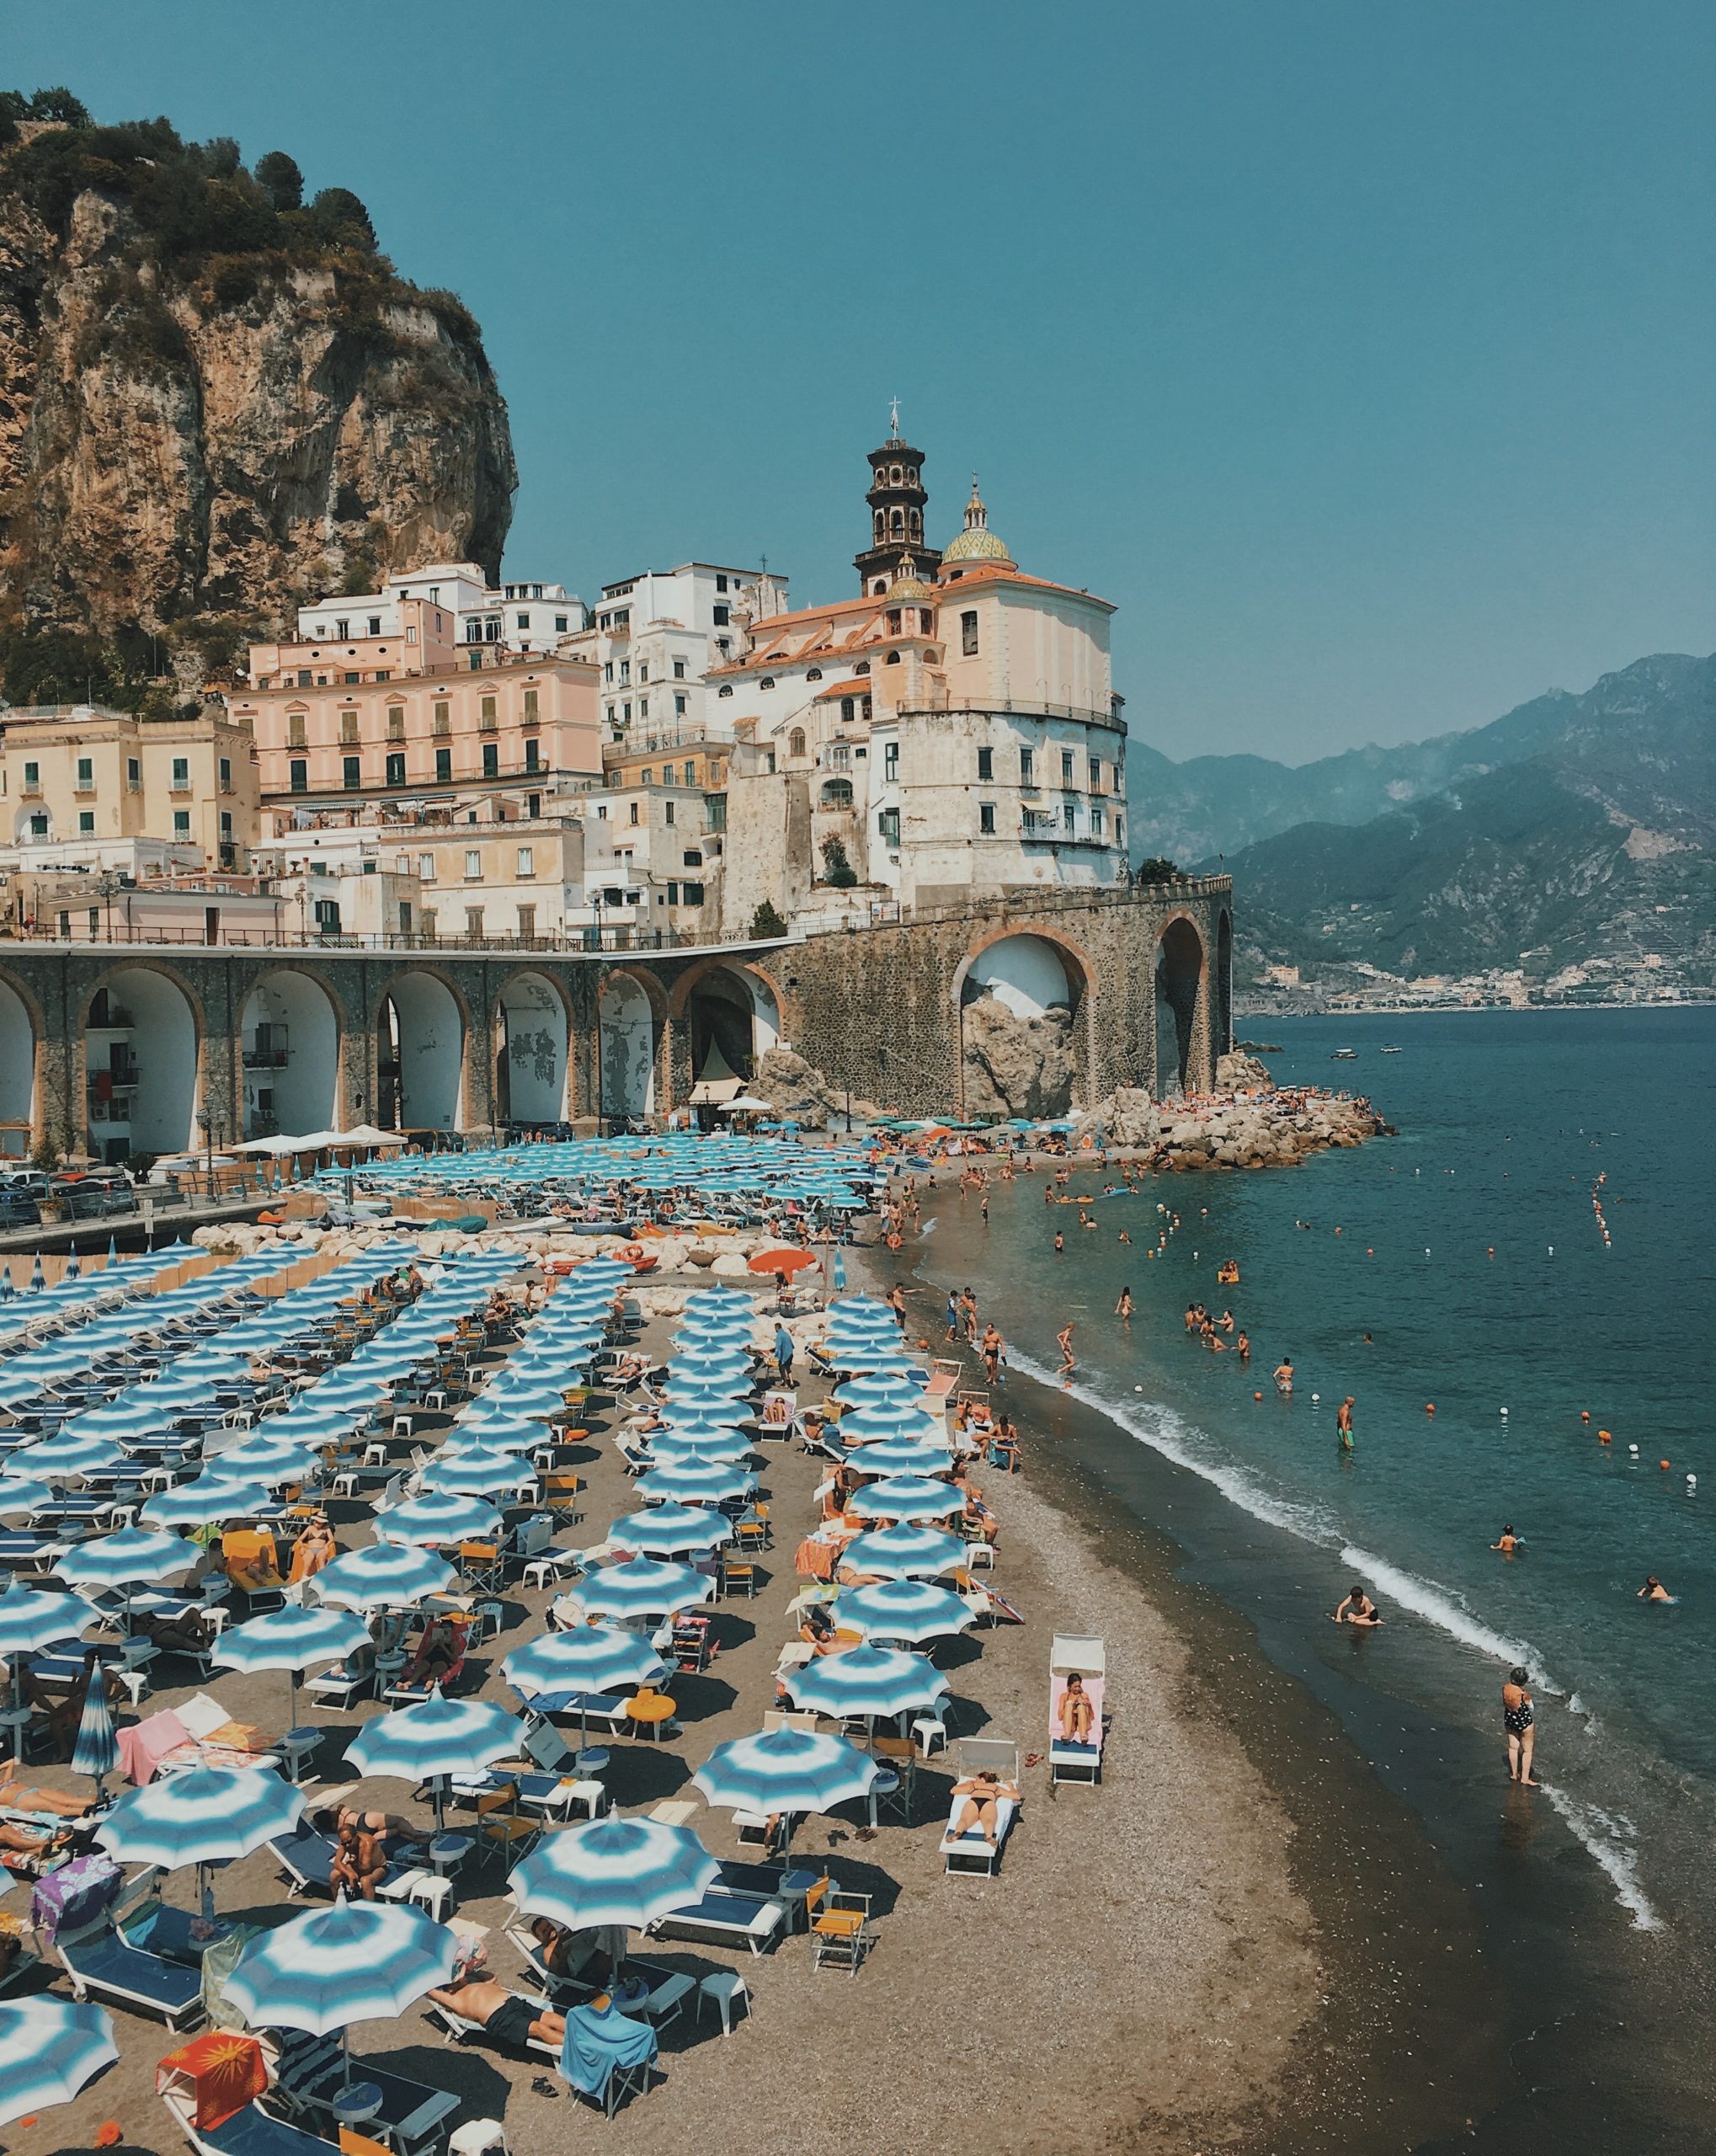 na snímke je zachytená talianska pláž so slečníkmi a krajinou v pozadí